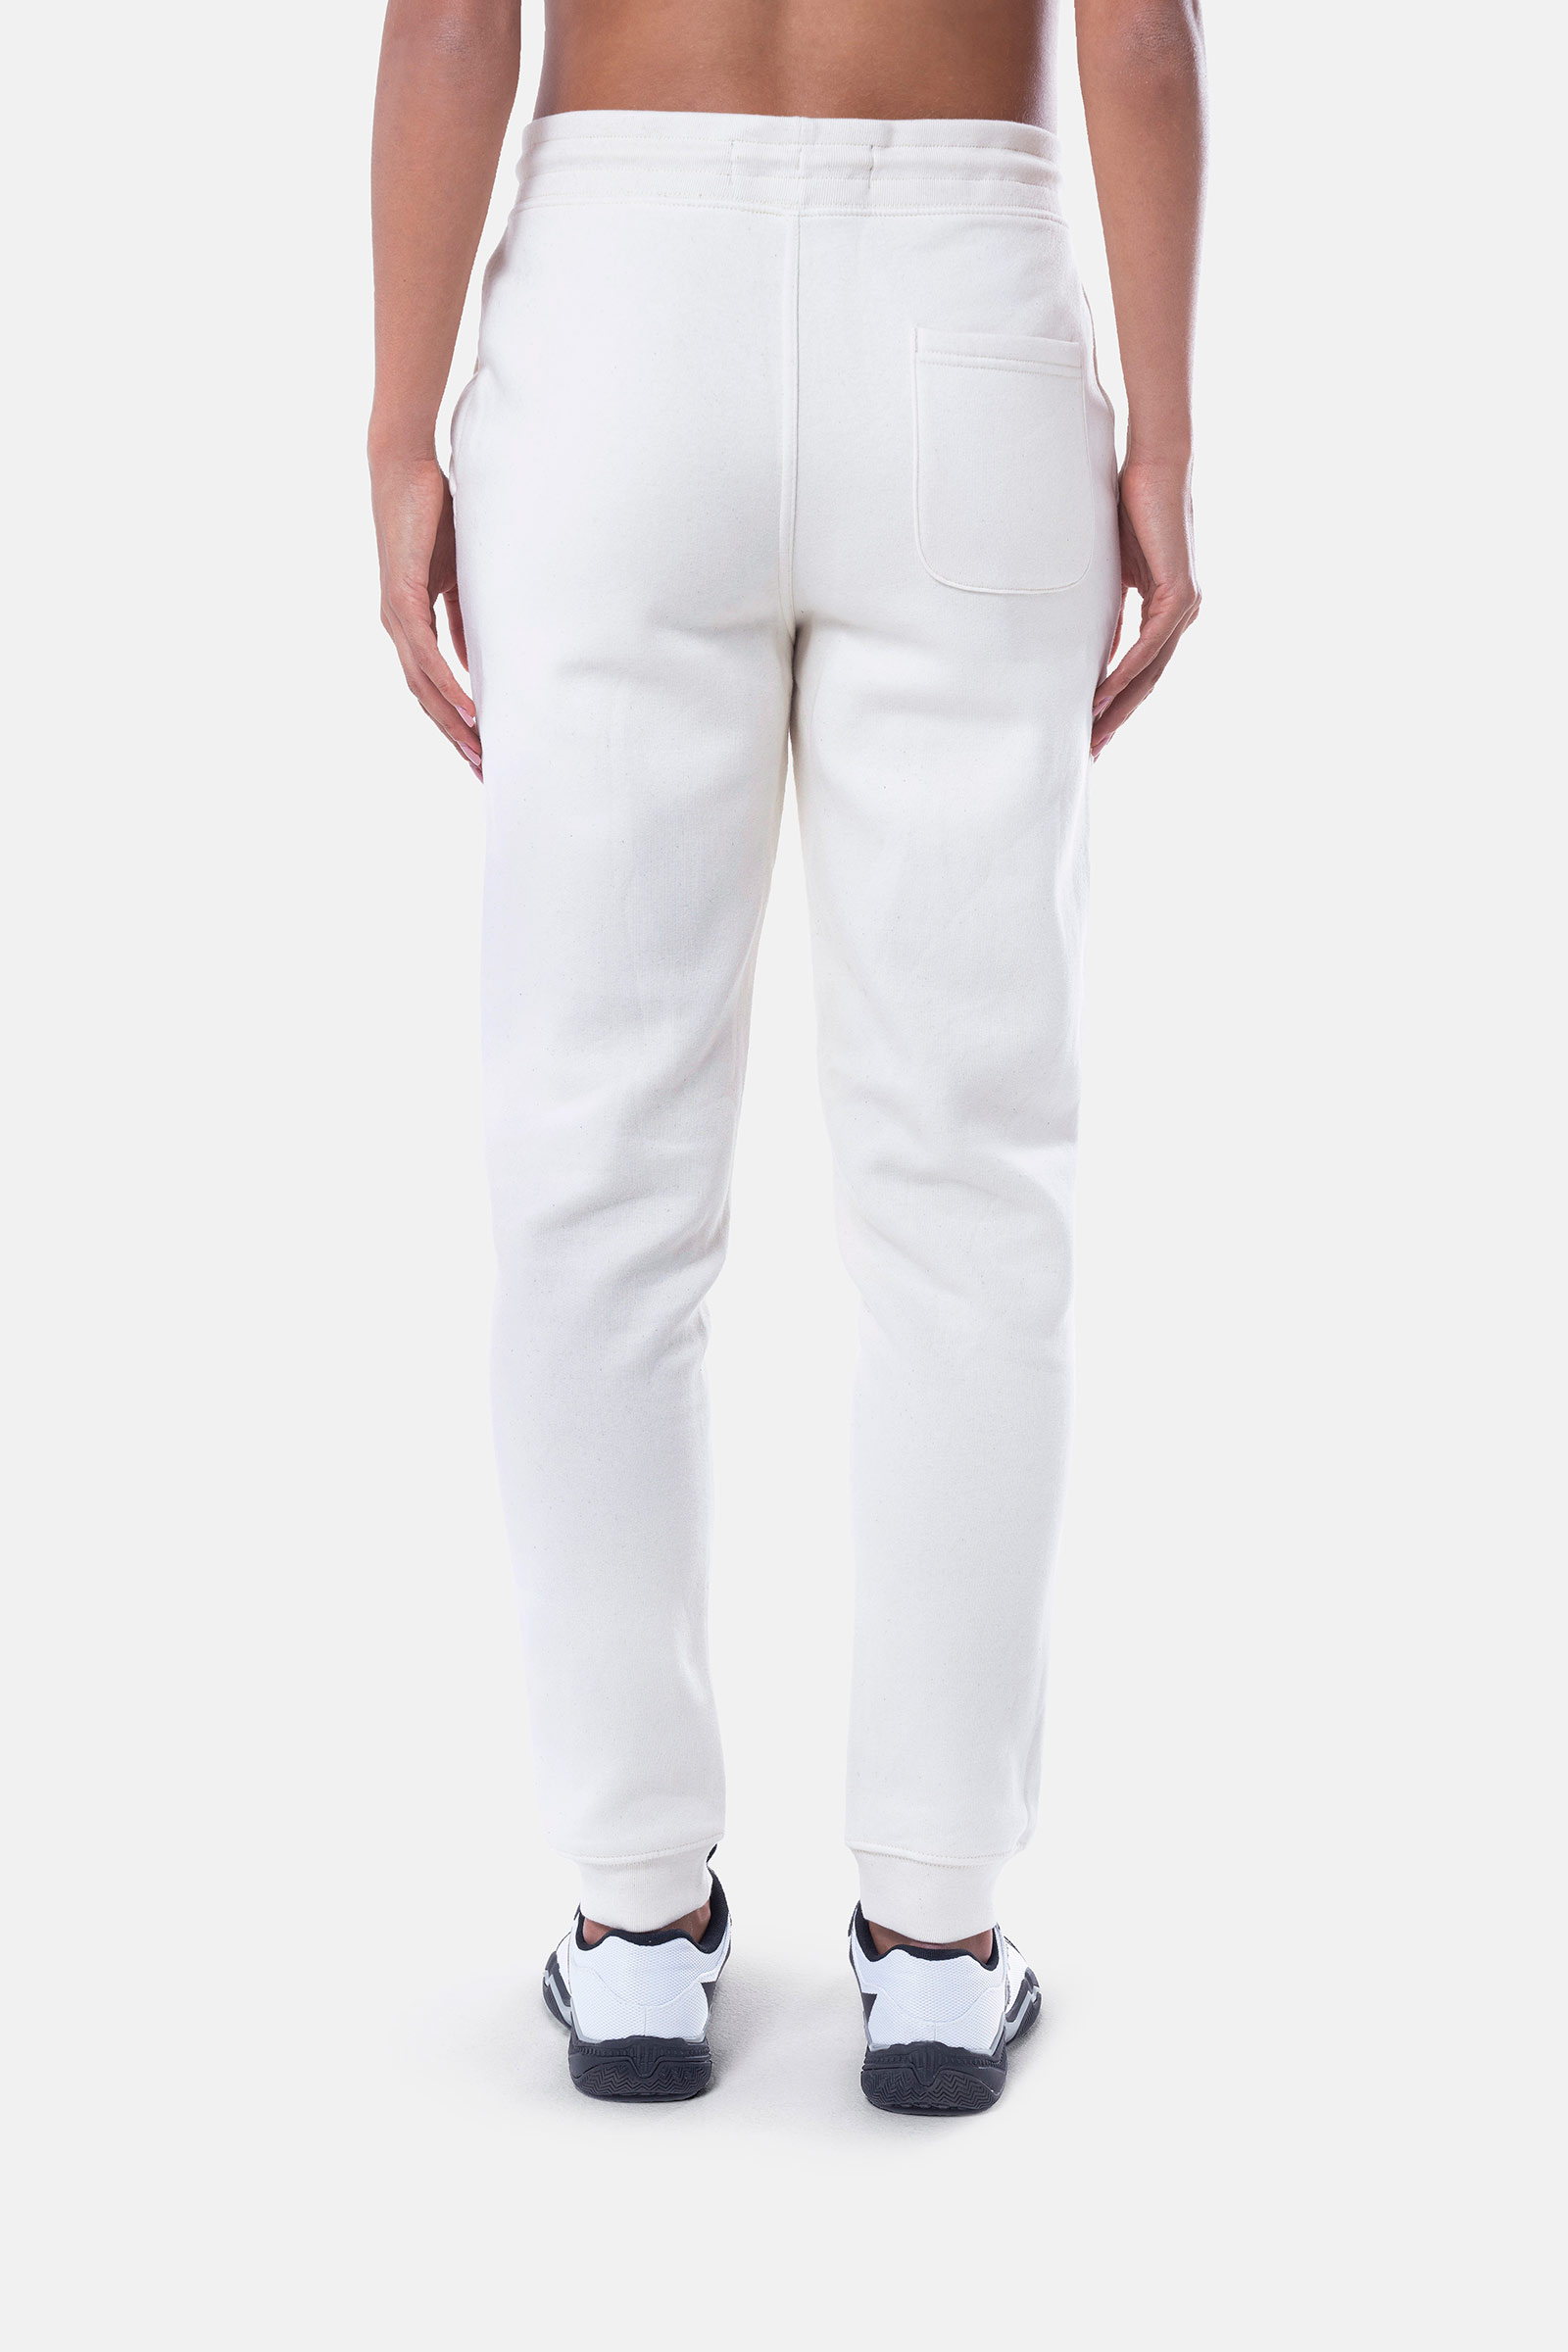 ITALIA 17 PANTS - WHITE - Hydrogen - Luxury Sportwear